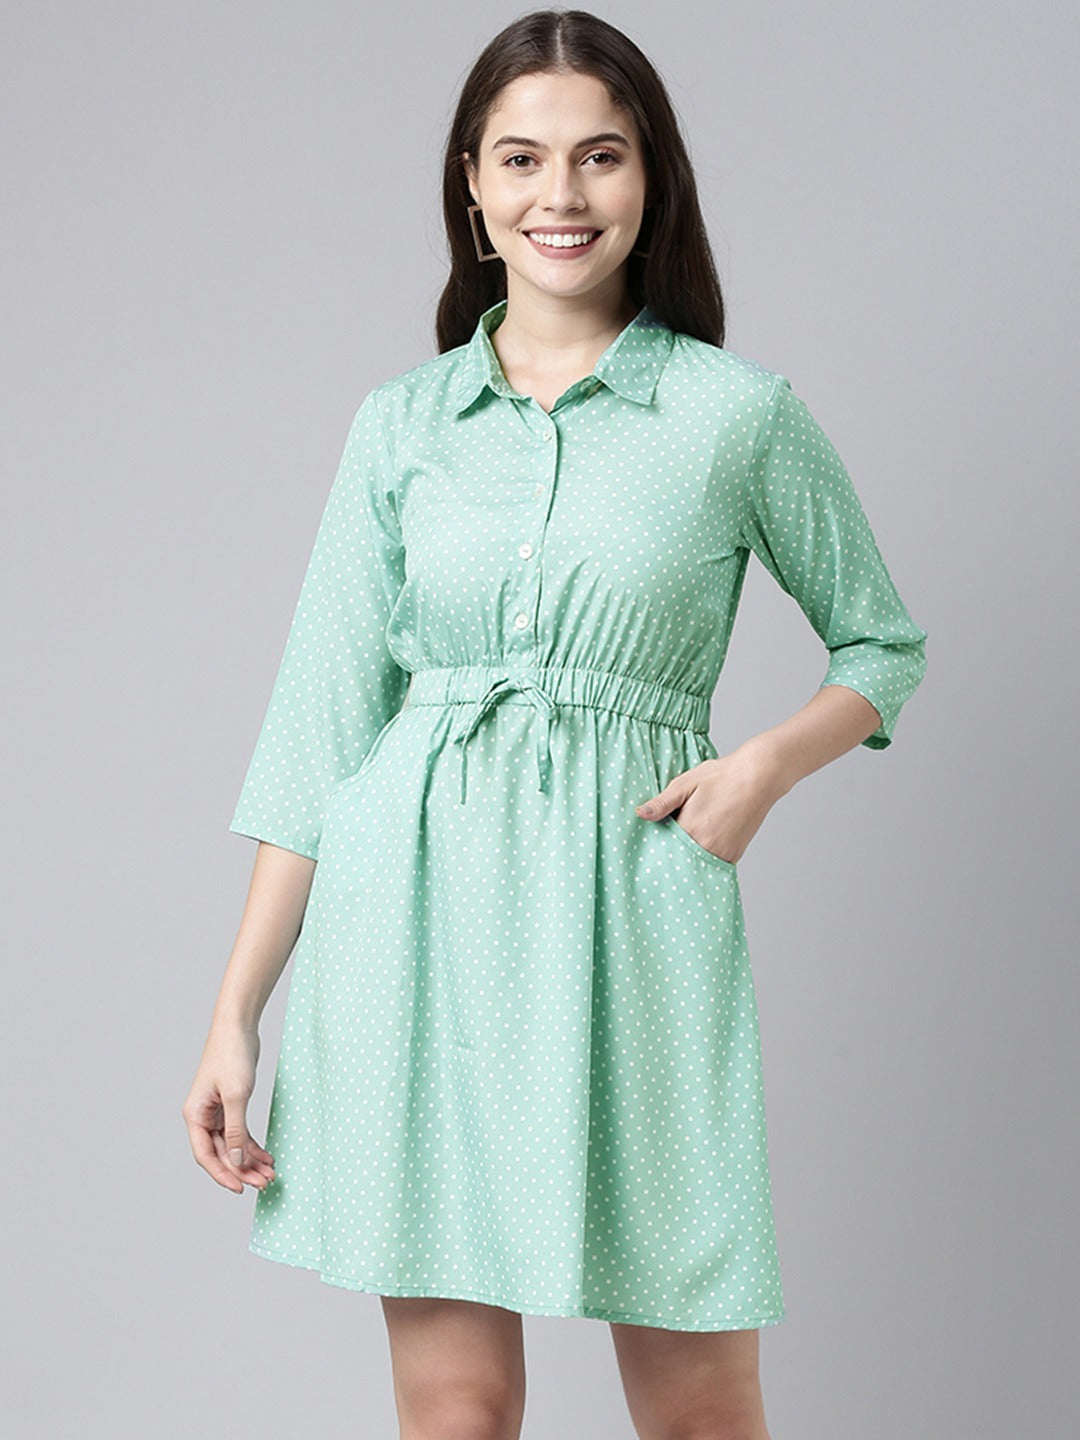 Women's Green Crepe Polka Dots Printed Dress  - Ahika